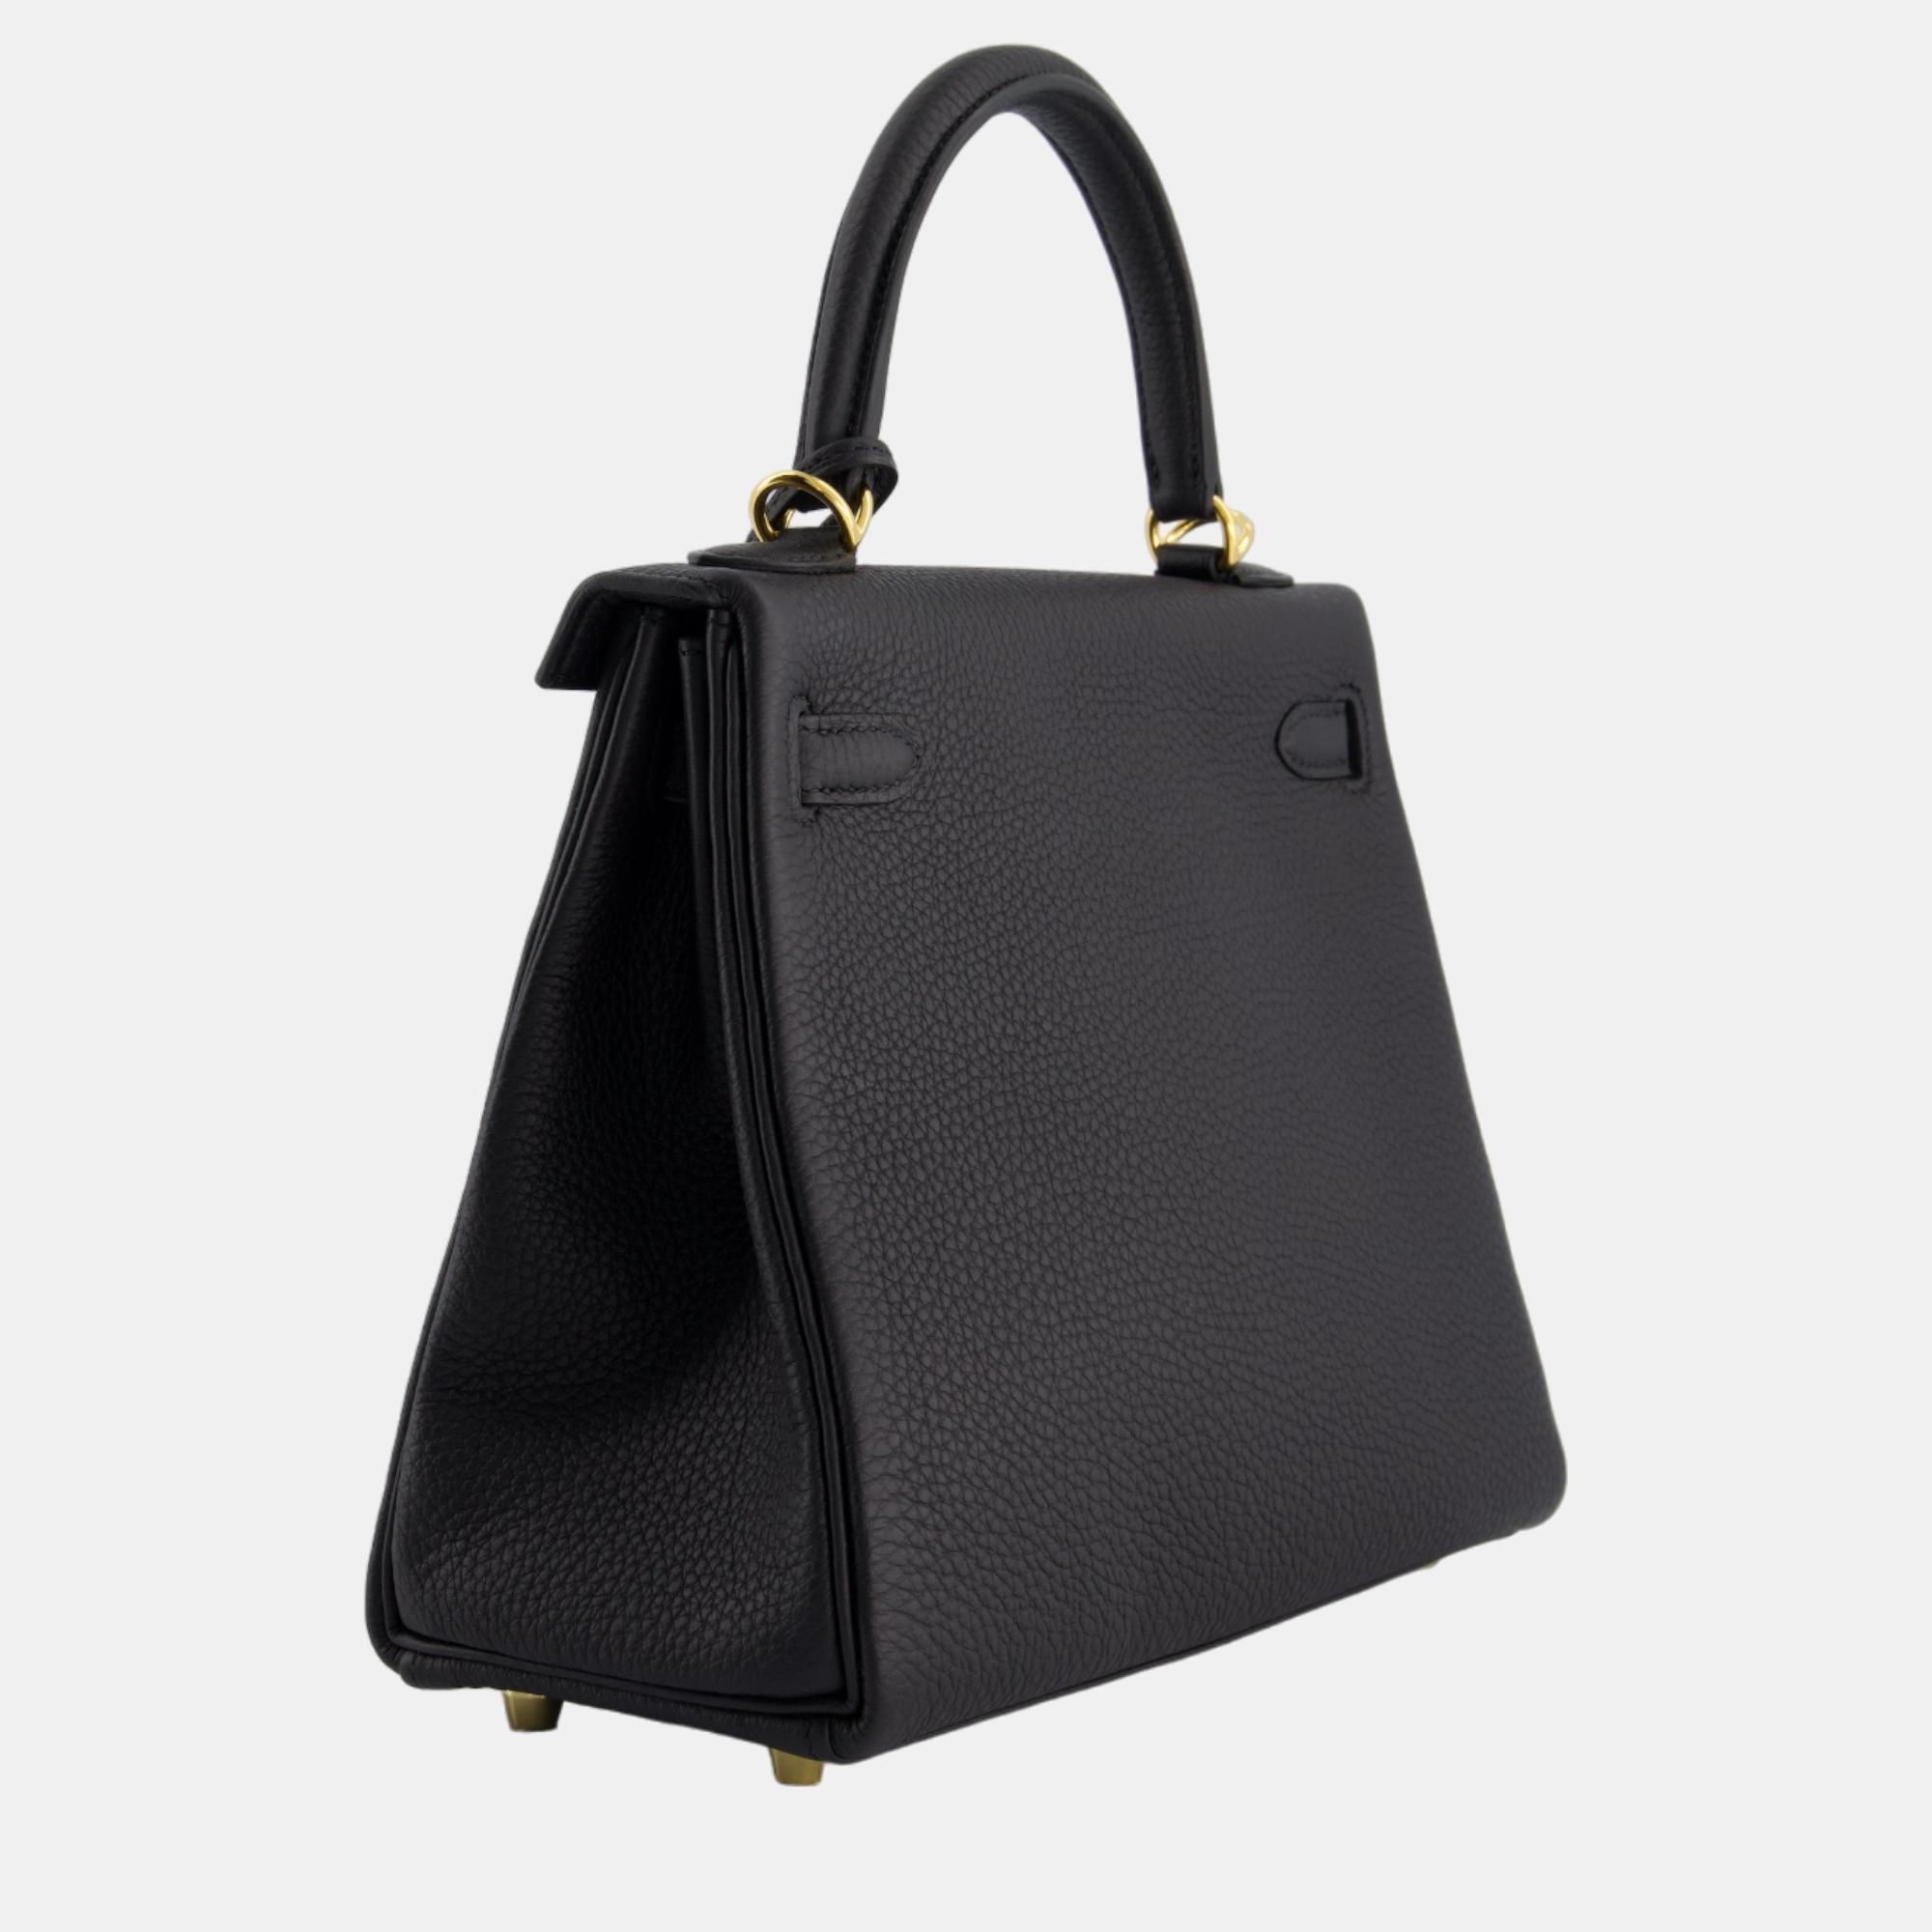 Hermes Kelly Bag 25cm Retourne In Black Togo Leather And Gold Hardware